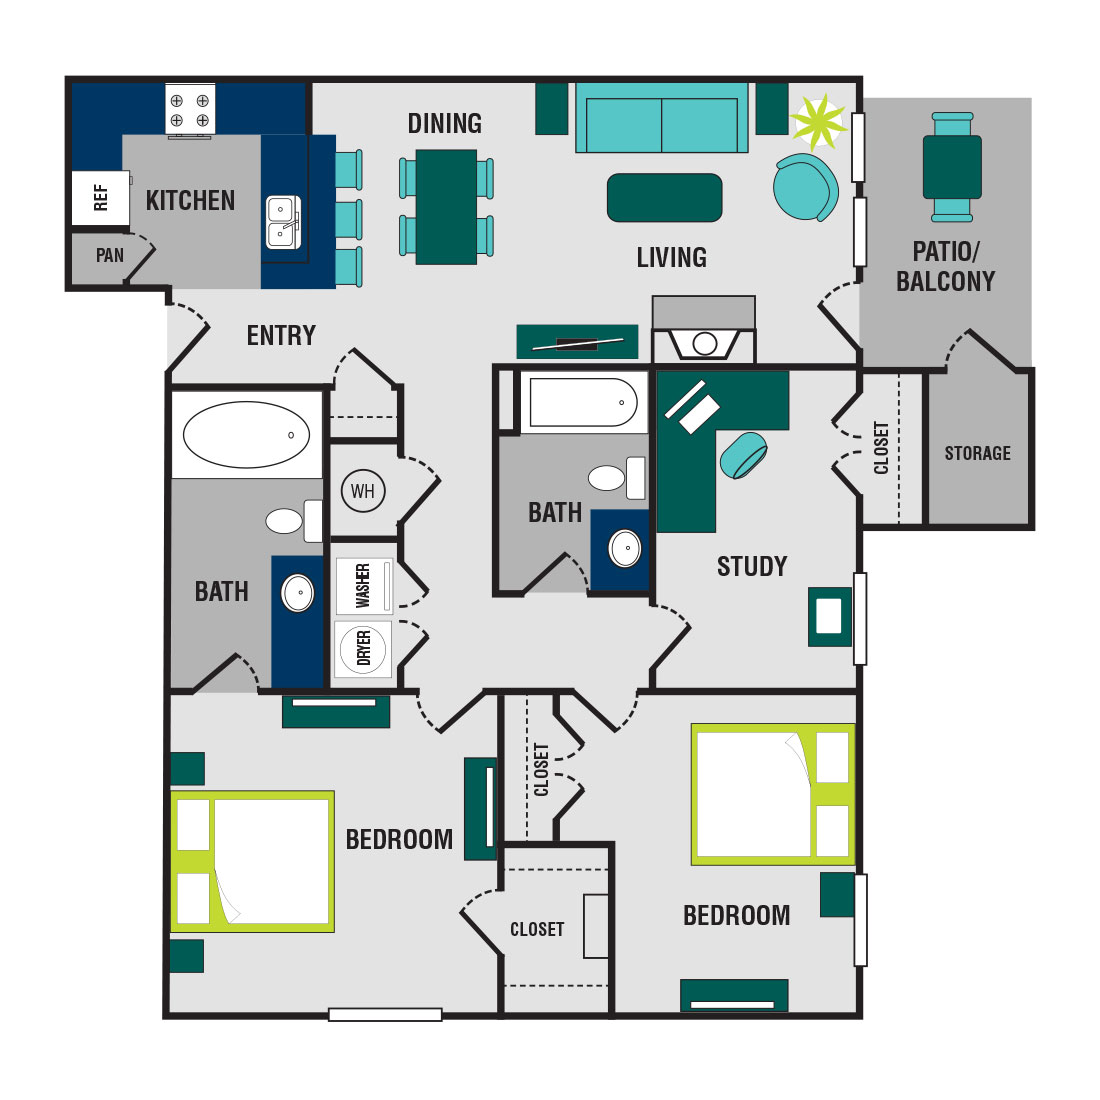 Floorplan - 3 Bedroom - Upgraded image